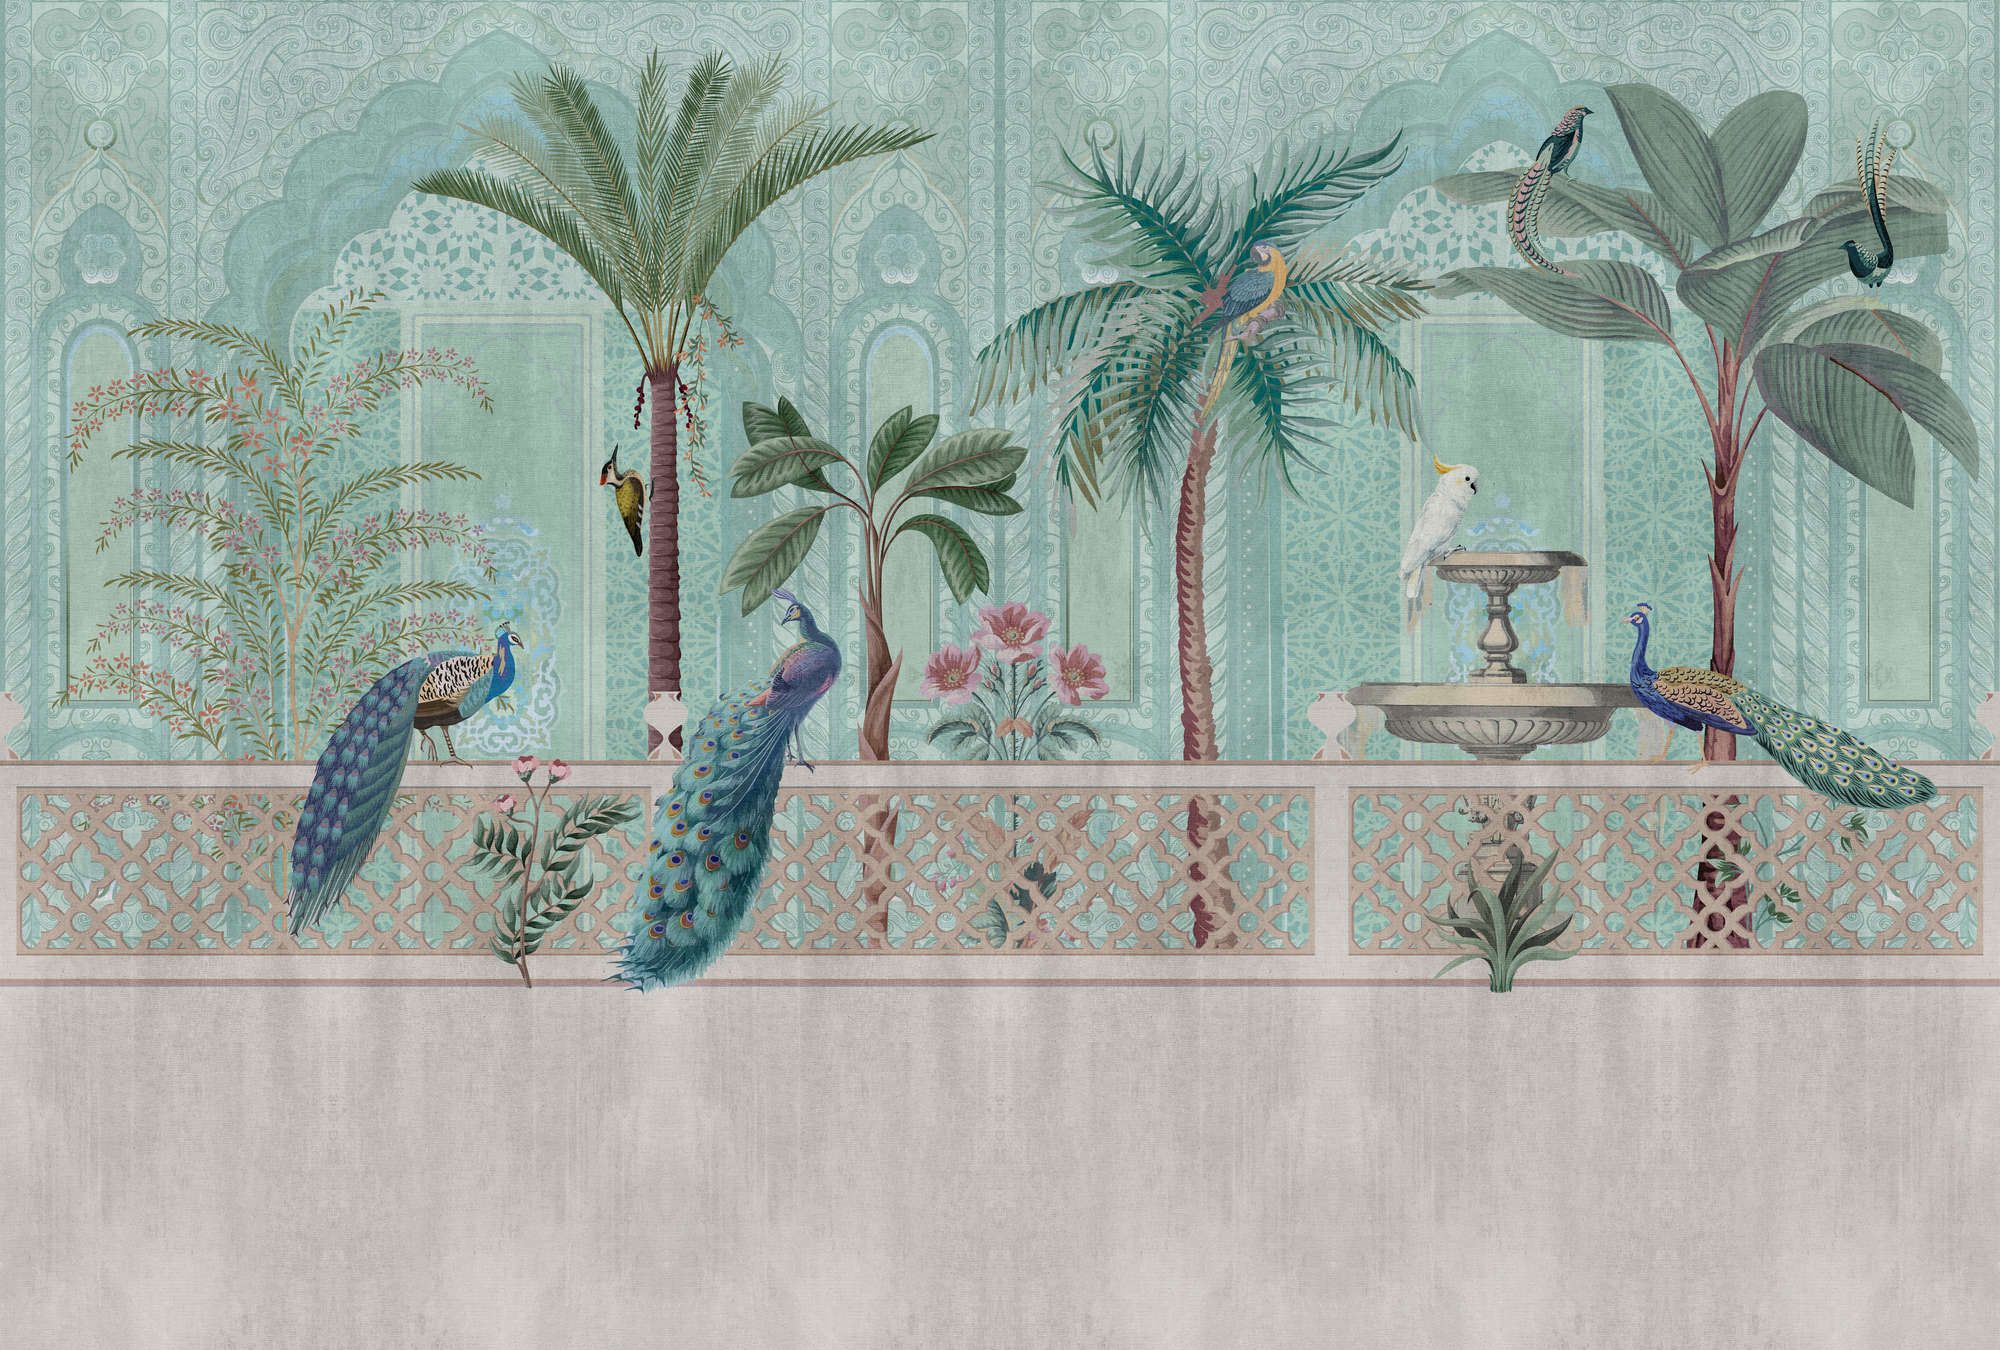             papier peint en papier panoramique »pavo« - oiseaux, palmiers & fontaines - vert, bleu avec structure gobelin | Intissé lisse, légèrement nacré
        